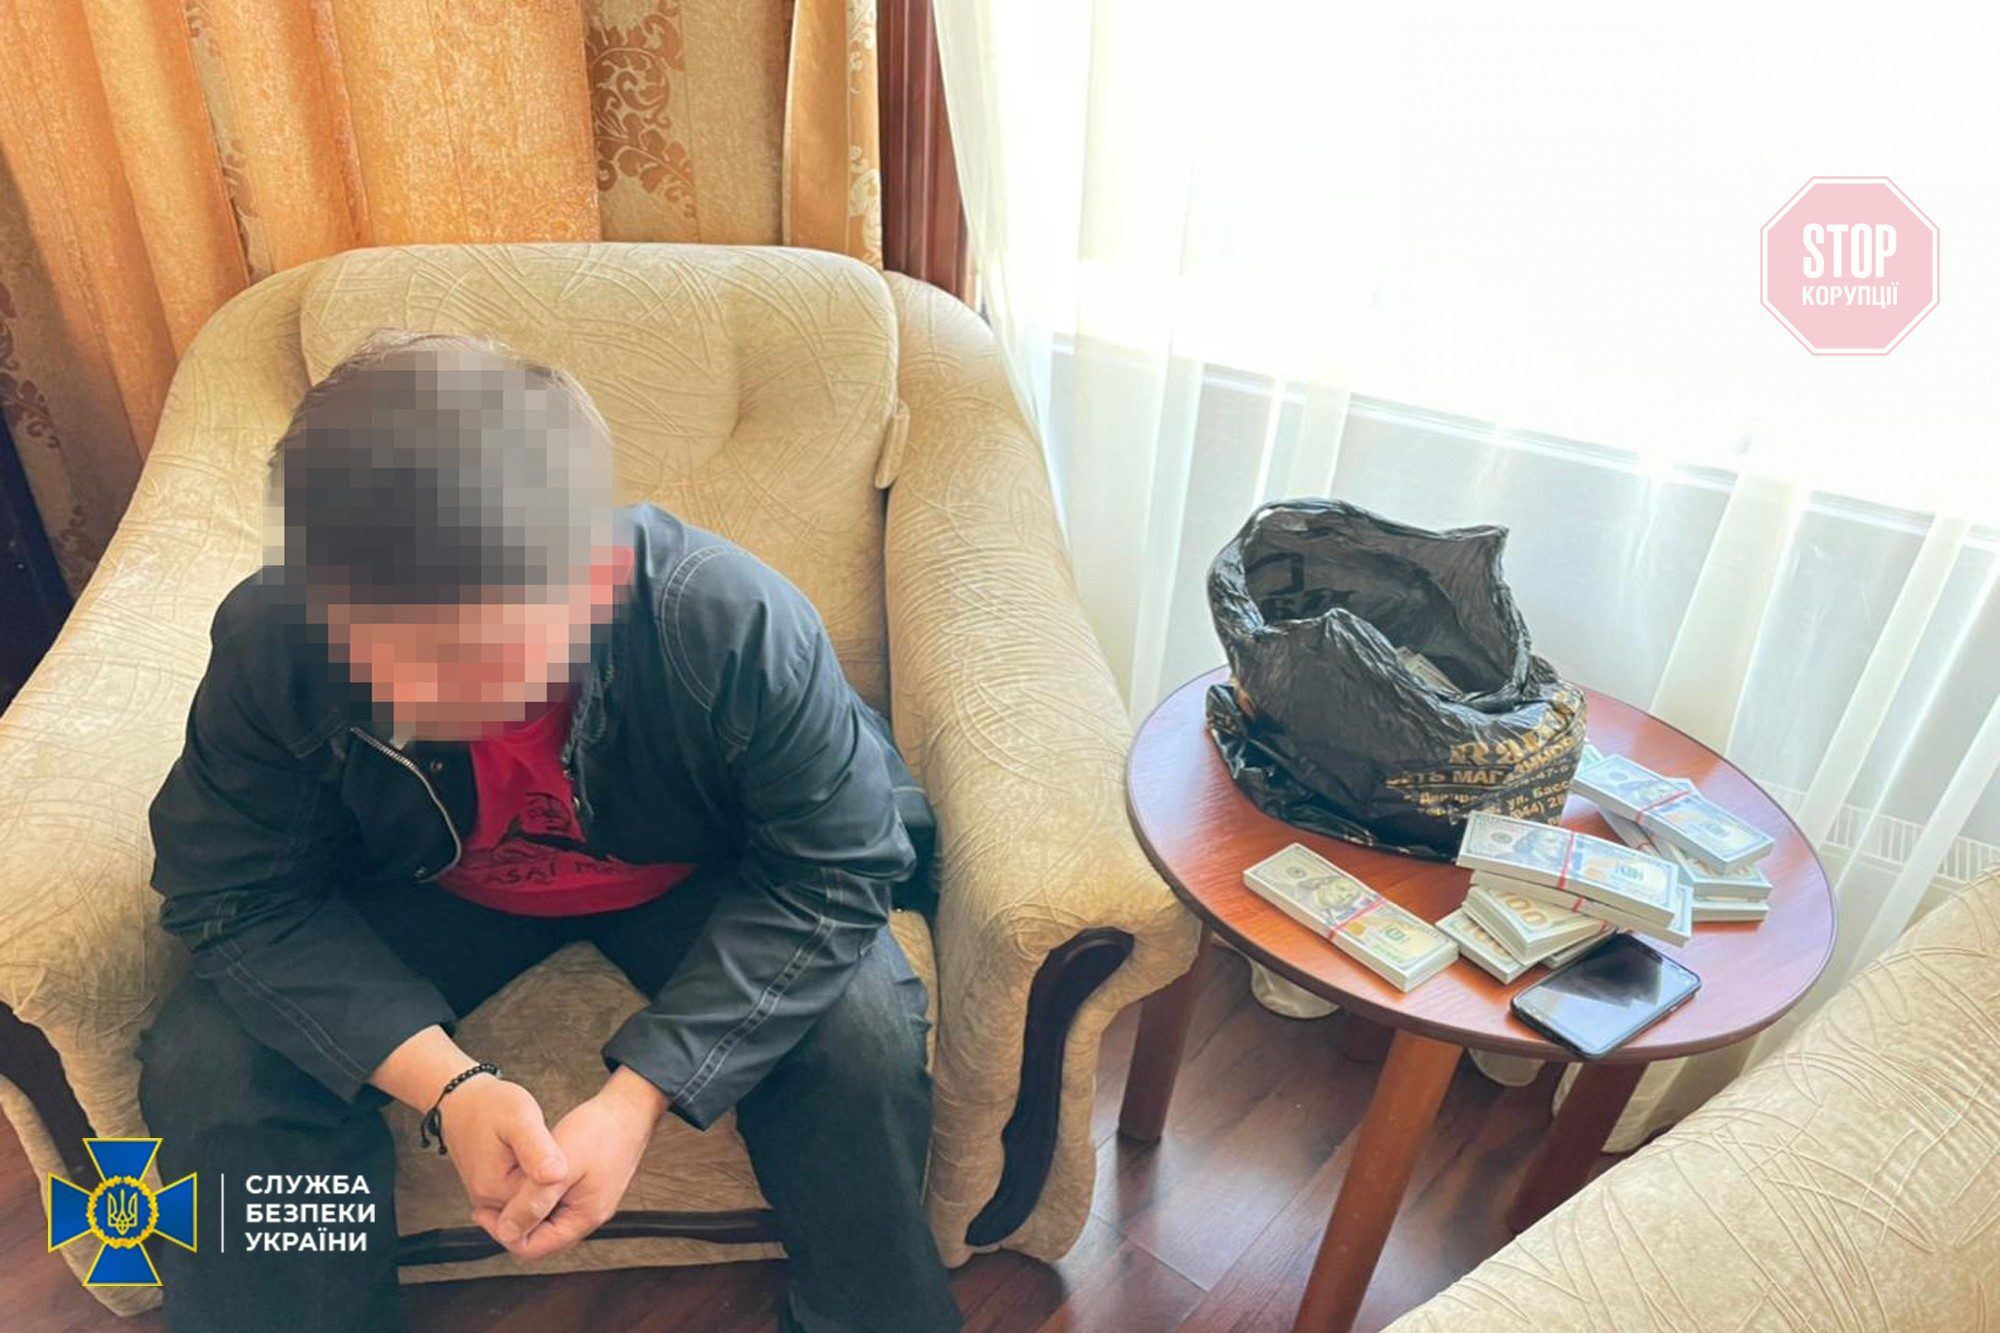  Співробітники на Миколаївщині затримали чоловіка за підозрою у держзраді Фото: СБУ